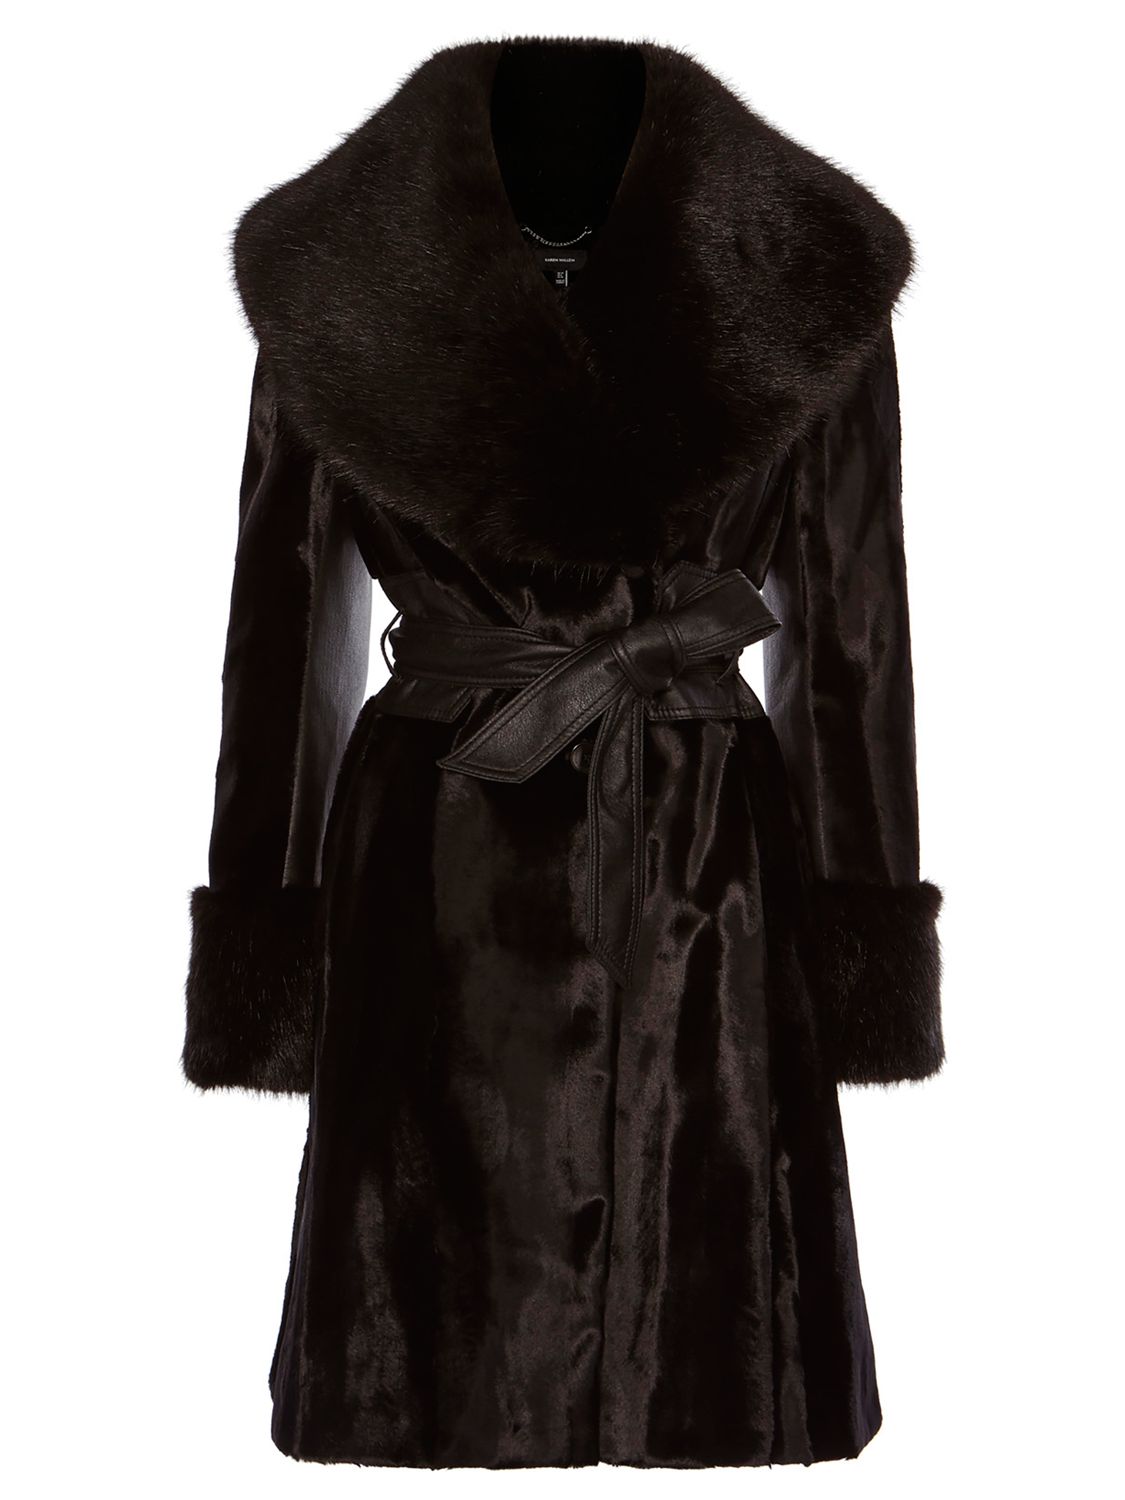 Karen Millen Pony Coat, Black